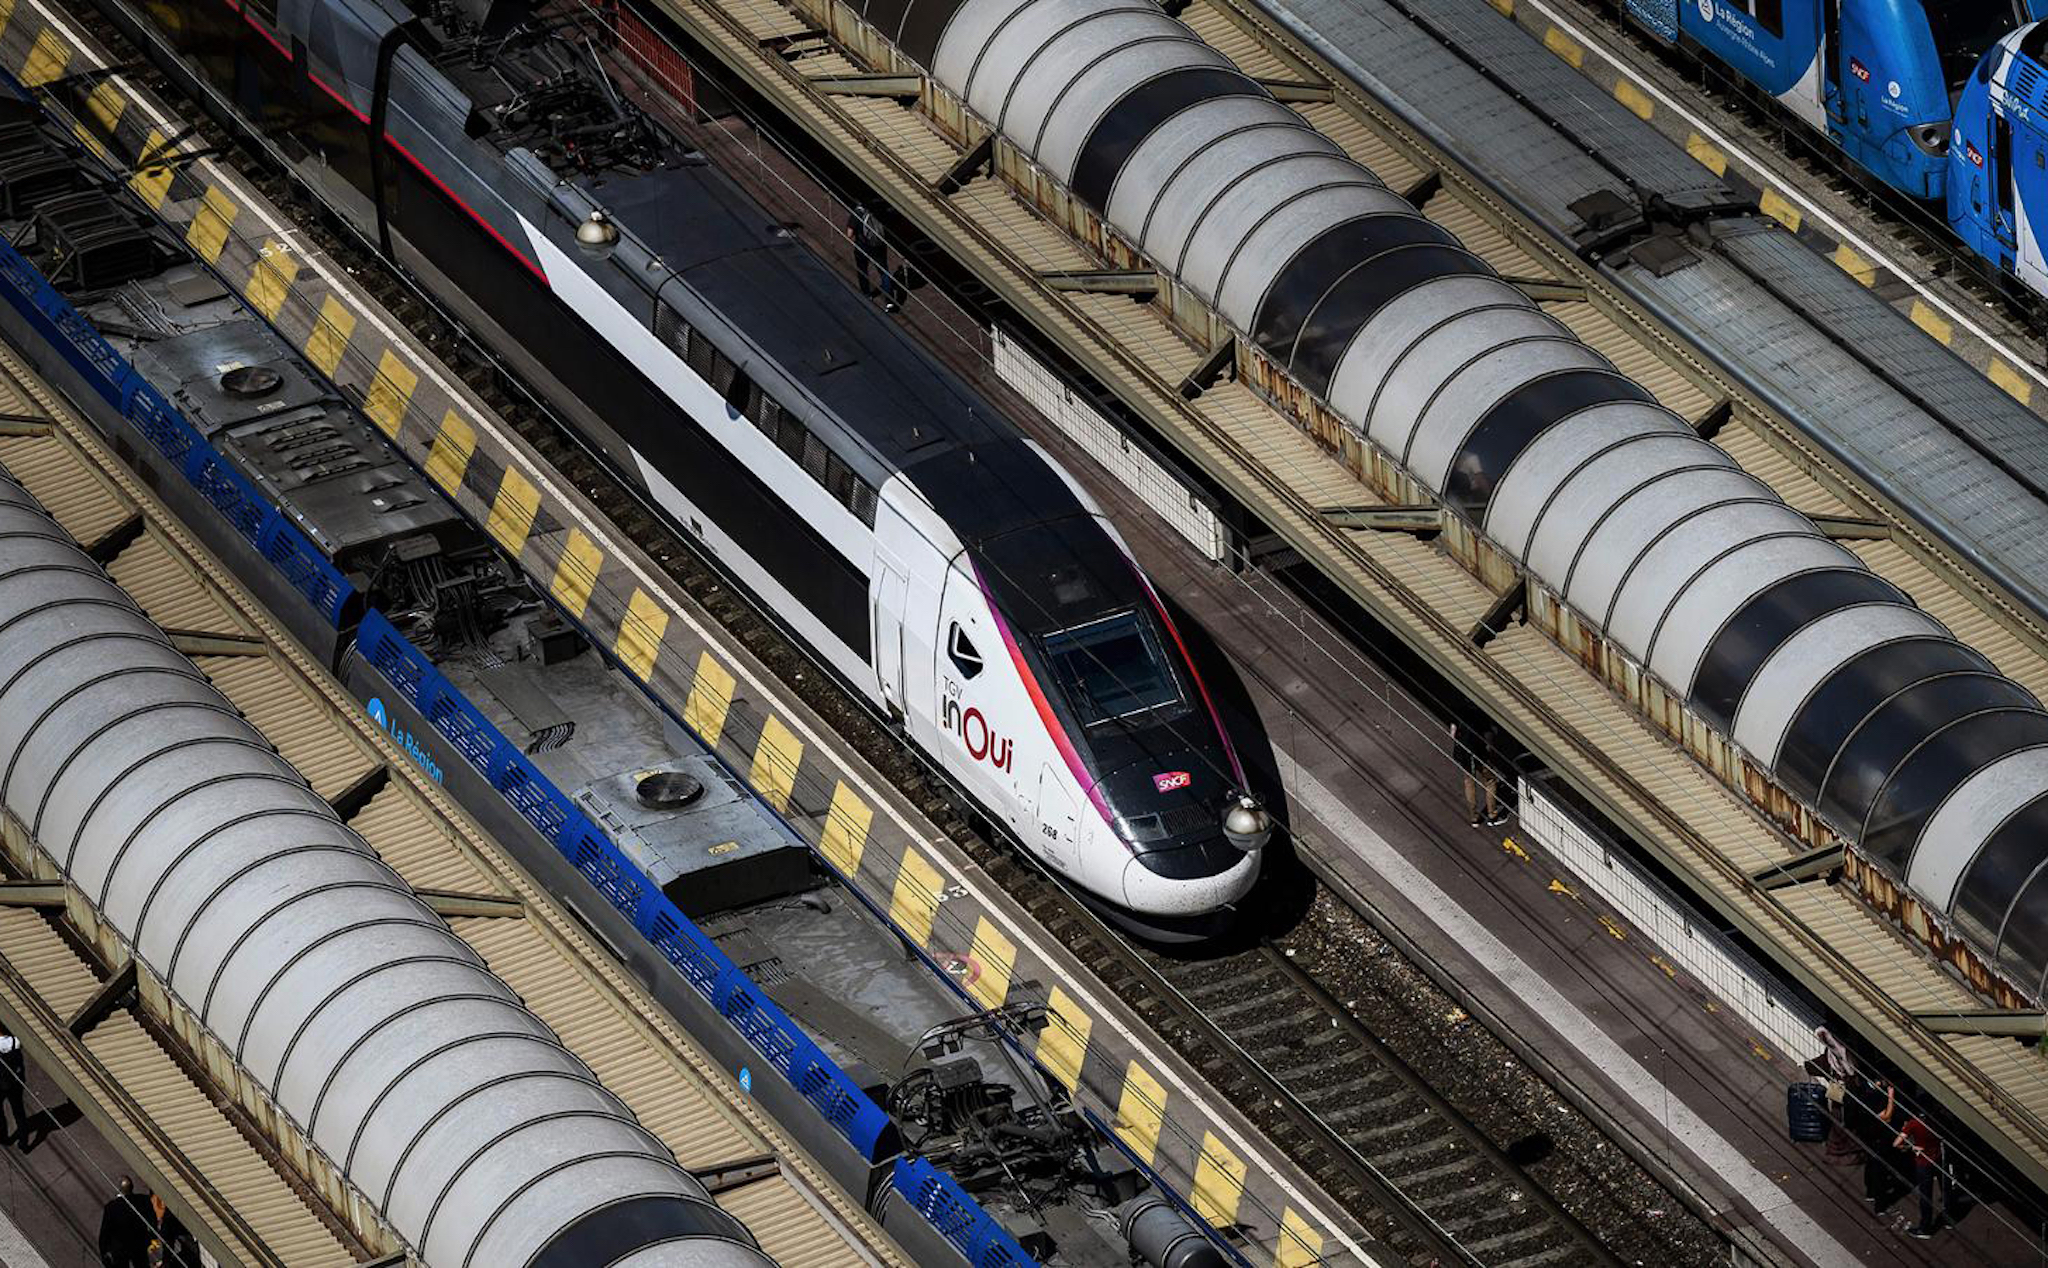 Châu Âu tham vọng làm đường sắt xuyên lục địa để giảm tải cho hàng không